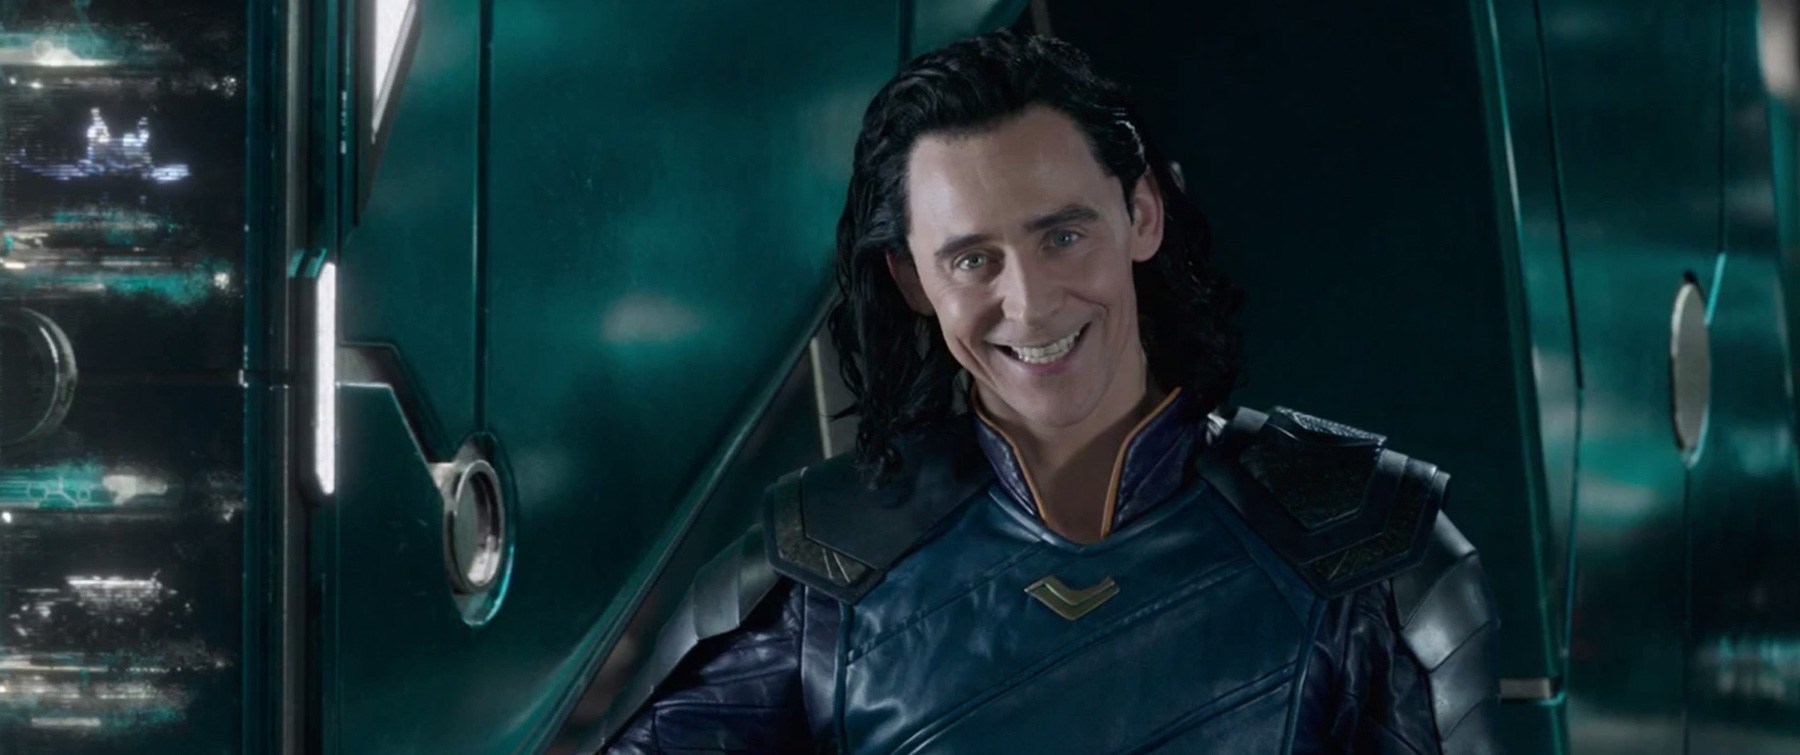 Quem ESTA atriz vai interpretar na série Loki? Estrela da Marvel comenta